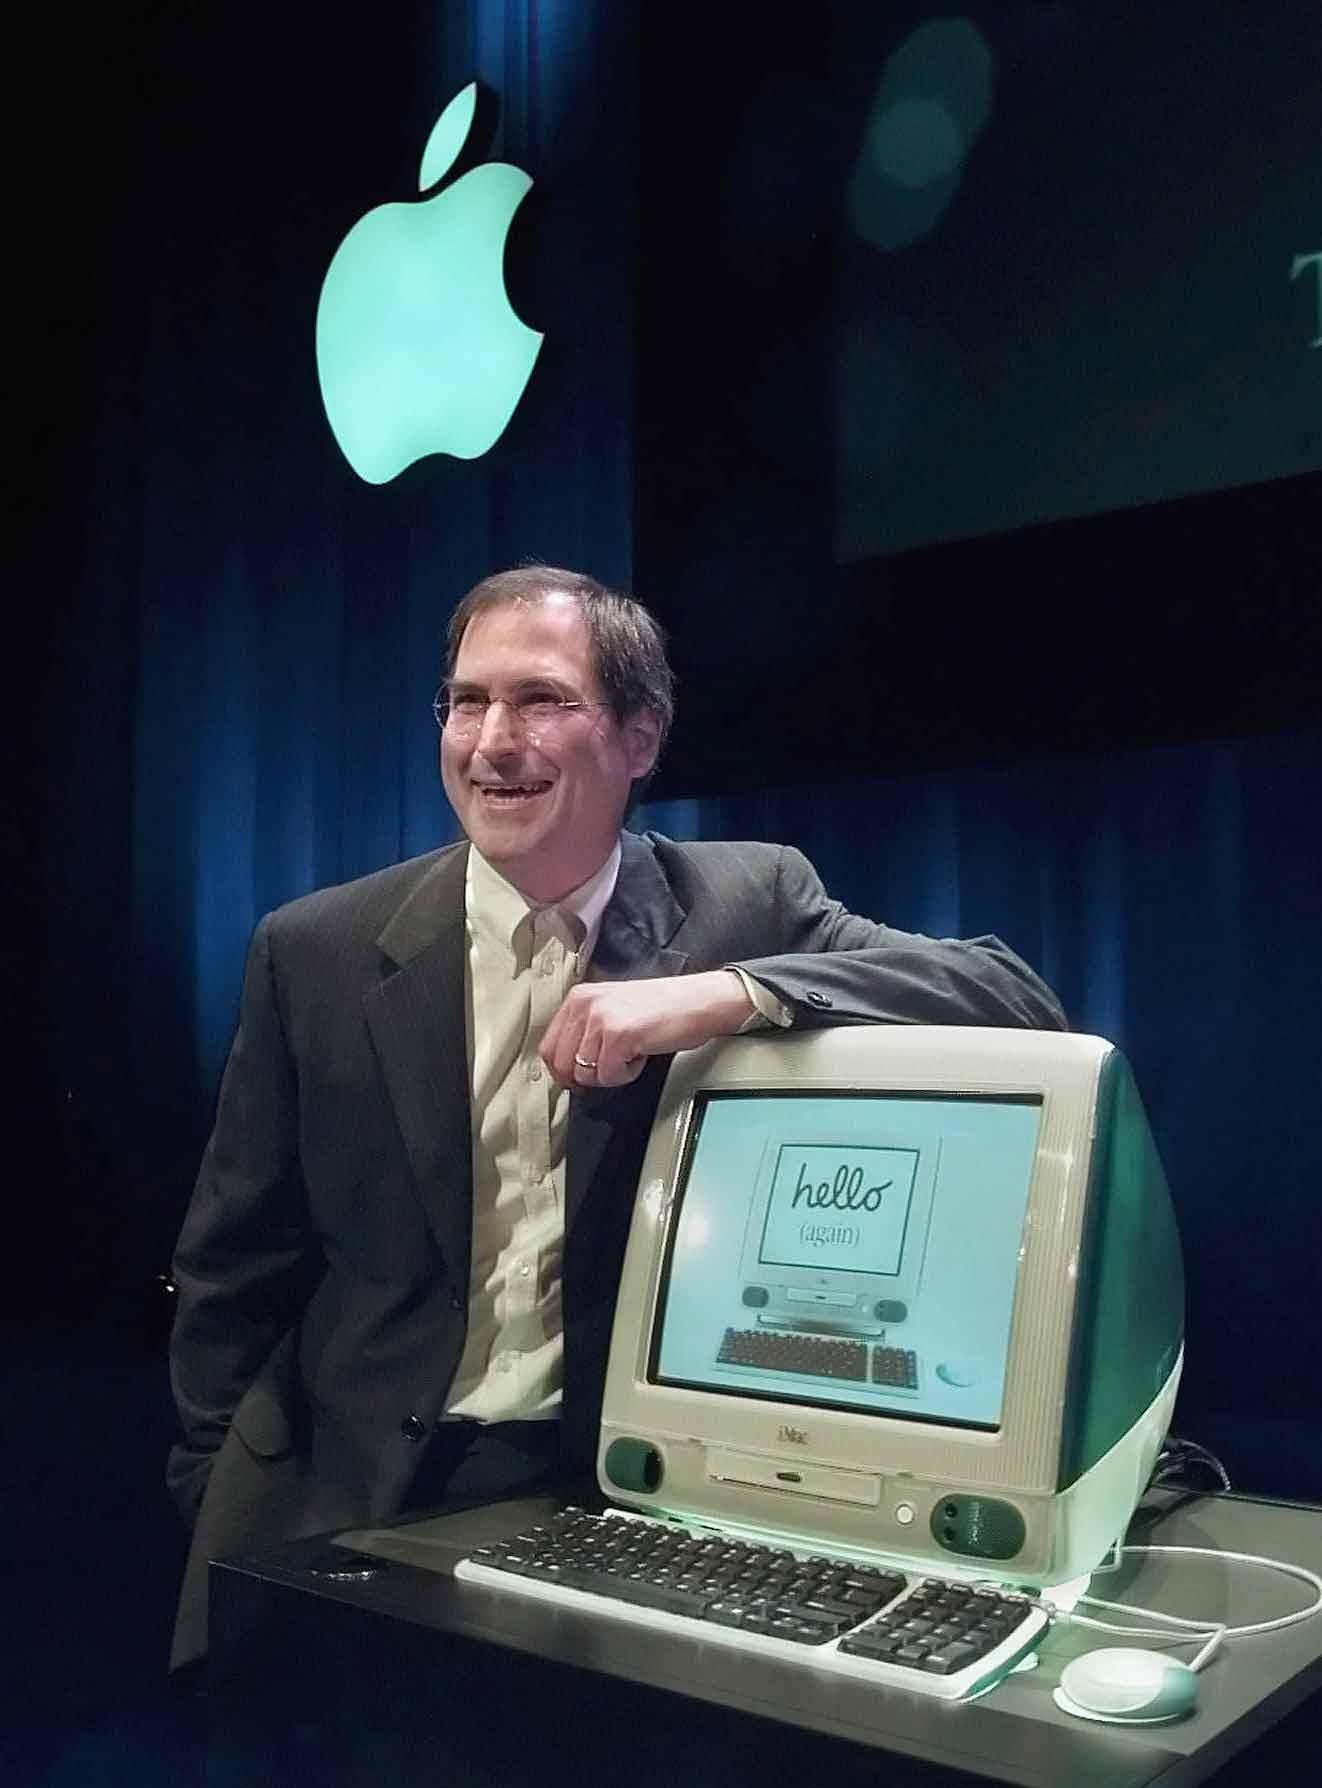 Ny Steve Jobs hänger nonchalant på sin nya skapelse: Imac. Året är 1999.